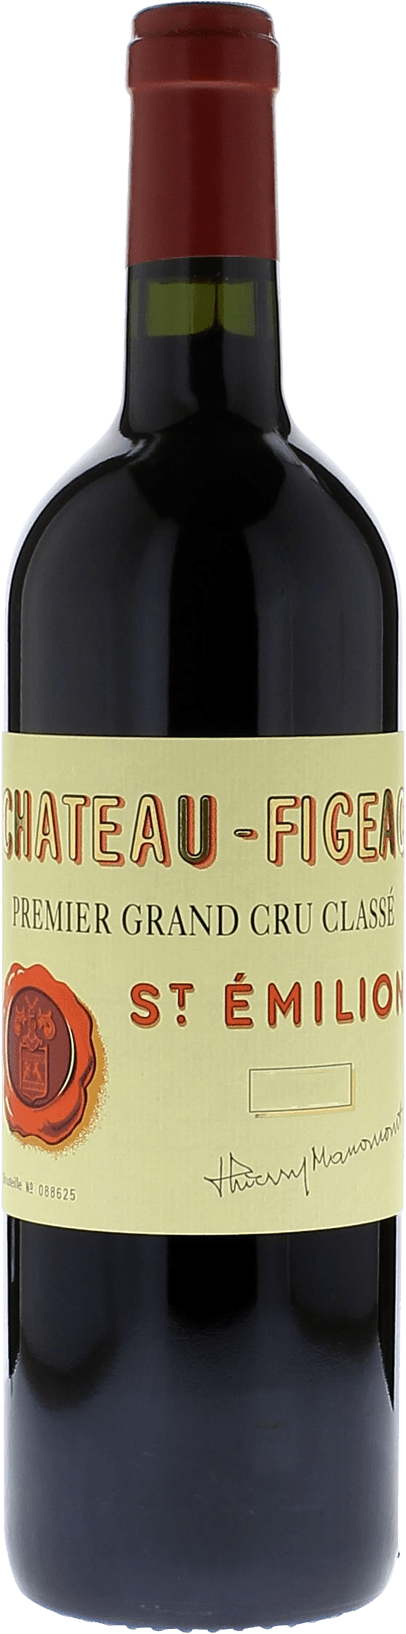 Figeac 2016 1er Grand cru class Saint-Emilion, Bordeaux rouge